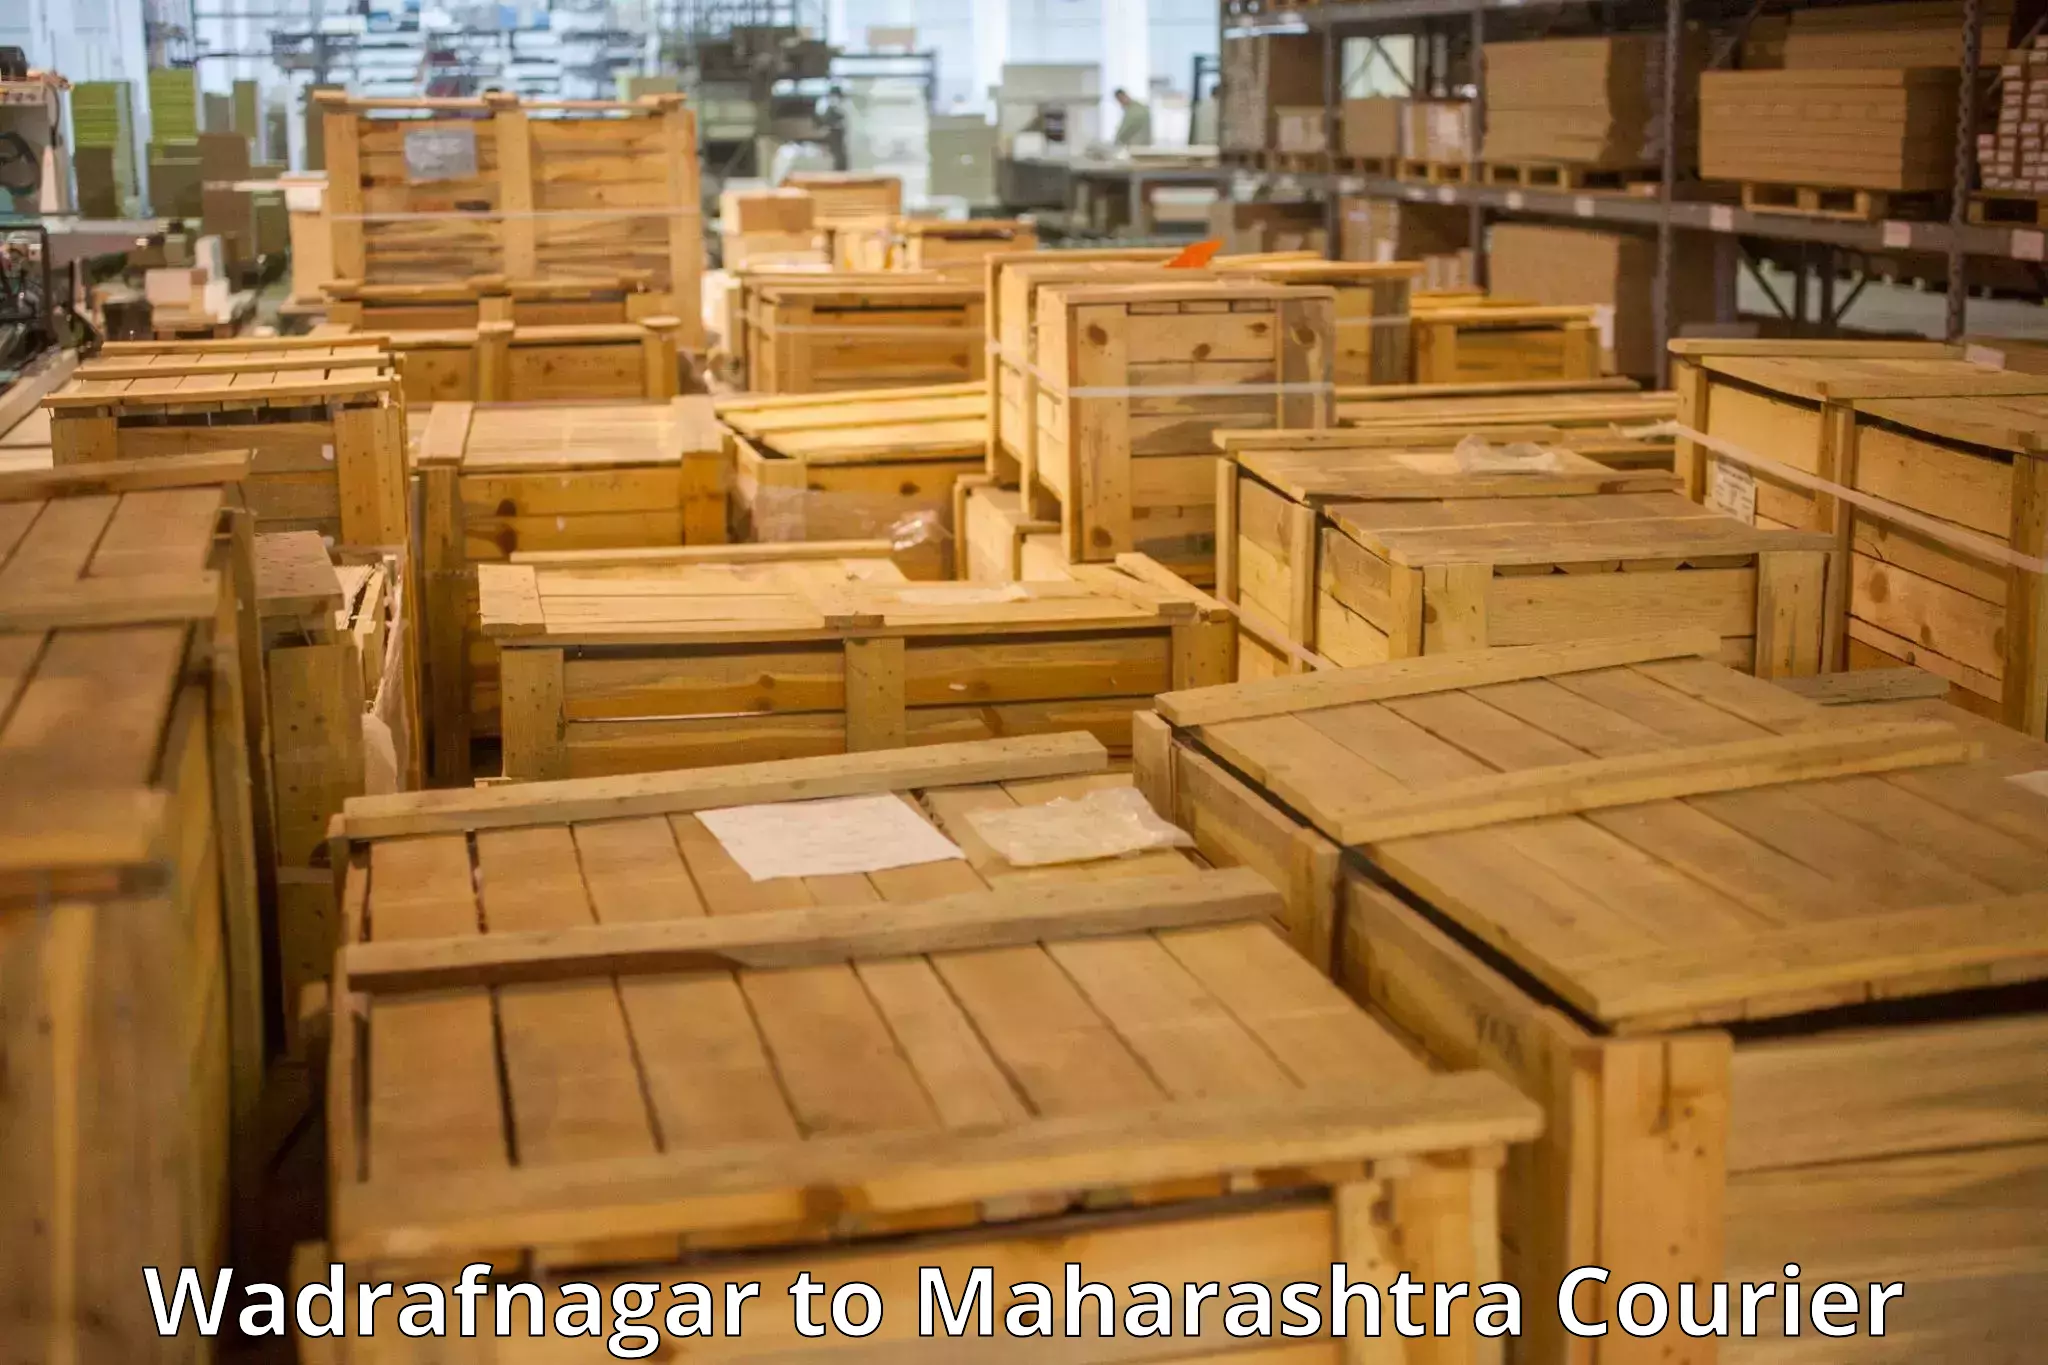 Luggage transport operations Wadrafnagar to Thane